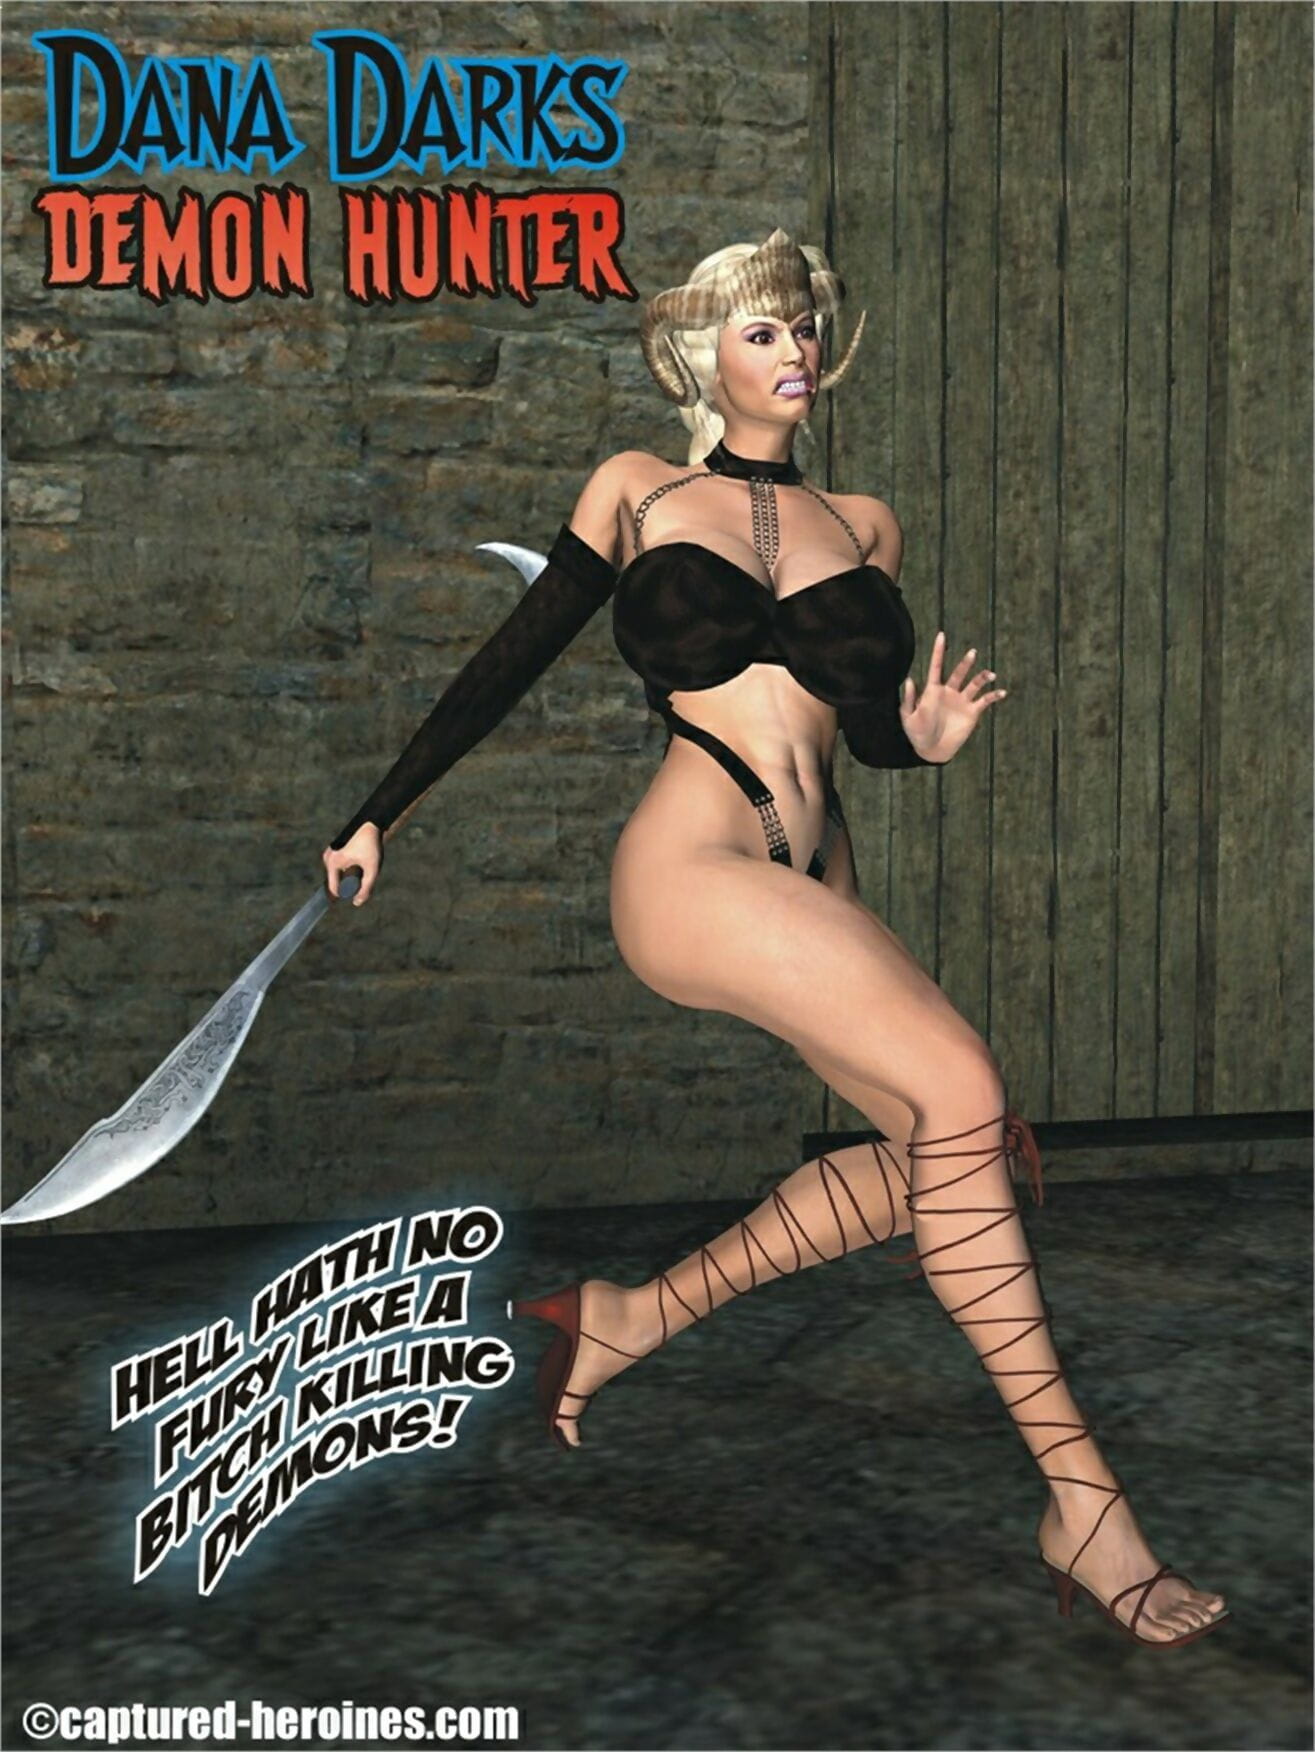 Erfasst Heldinnen Dana dunkler – Demon hunter